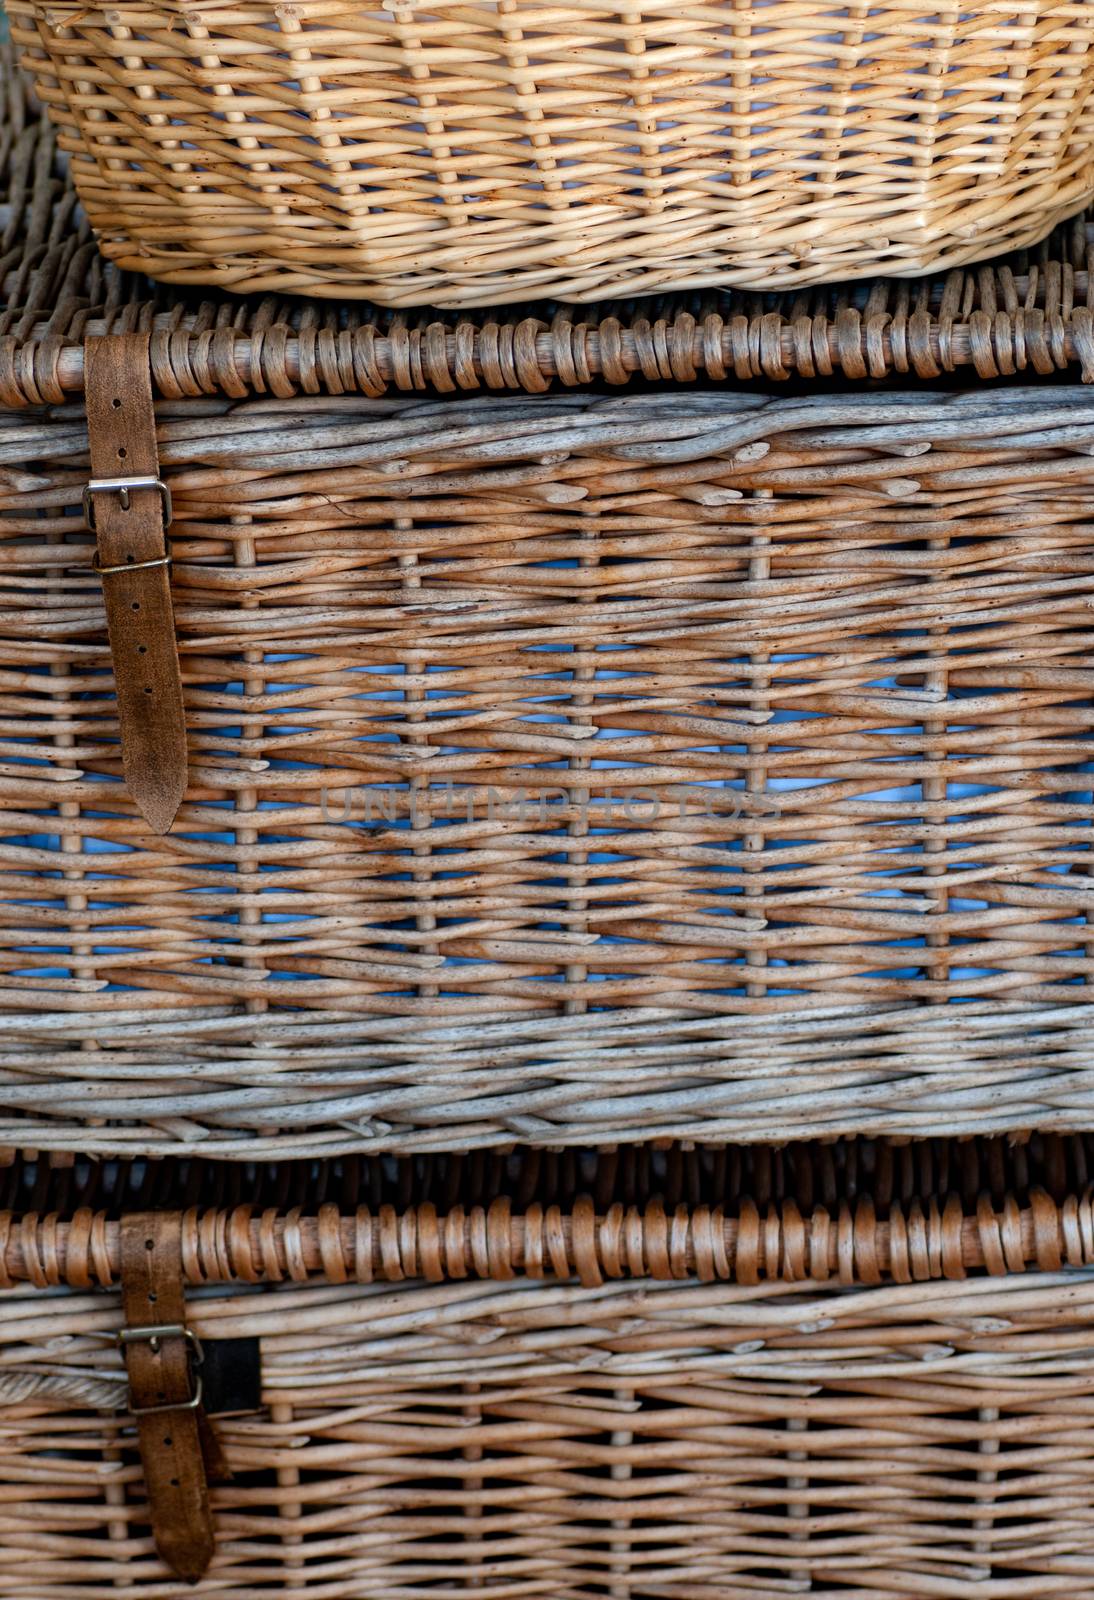 Washing baskets by TimAwe